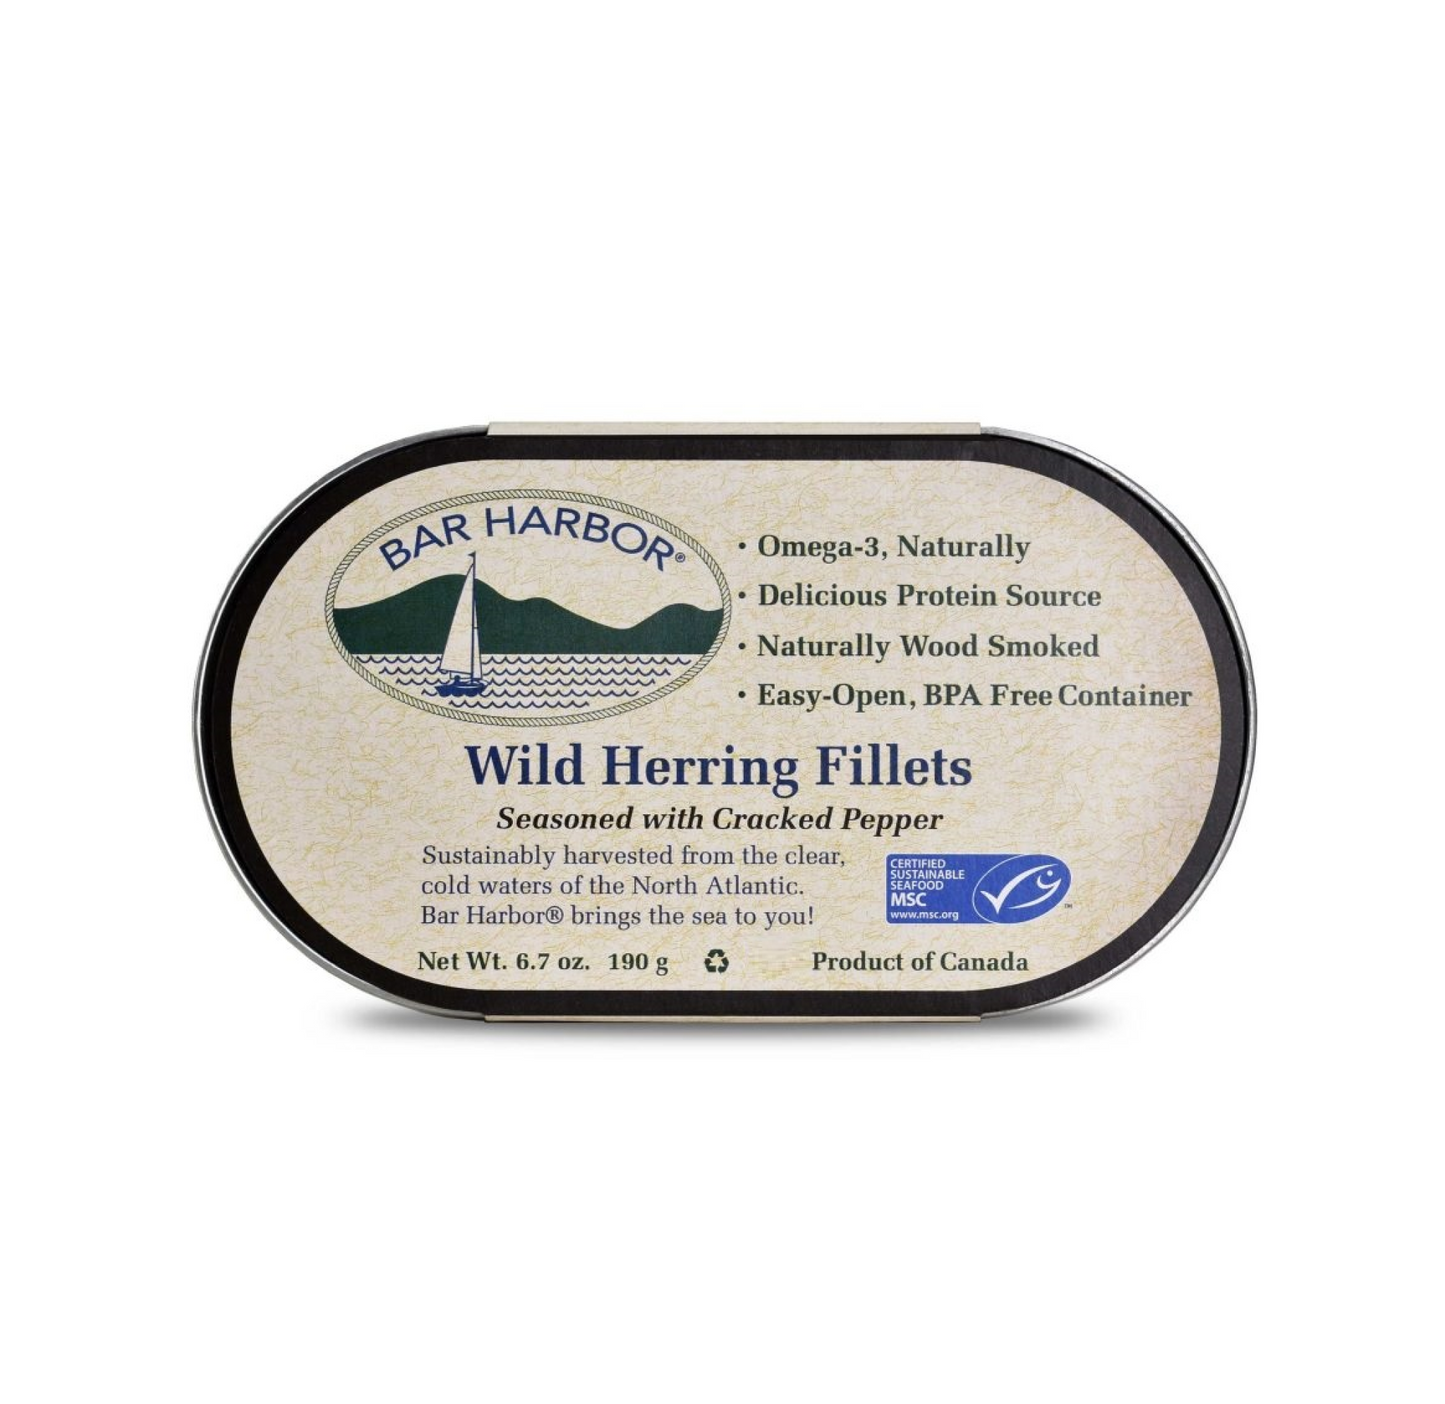 Bar Harbor Wild Herring Fillets Seasoned with Cracked Pepper 190g